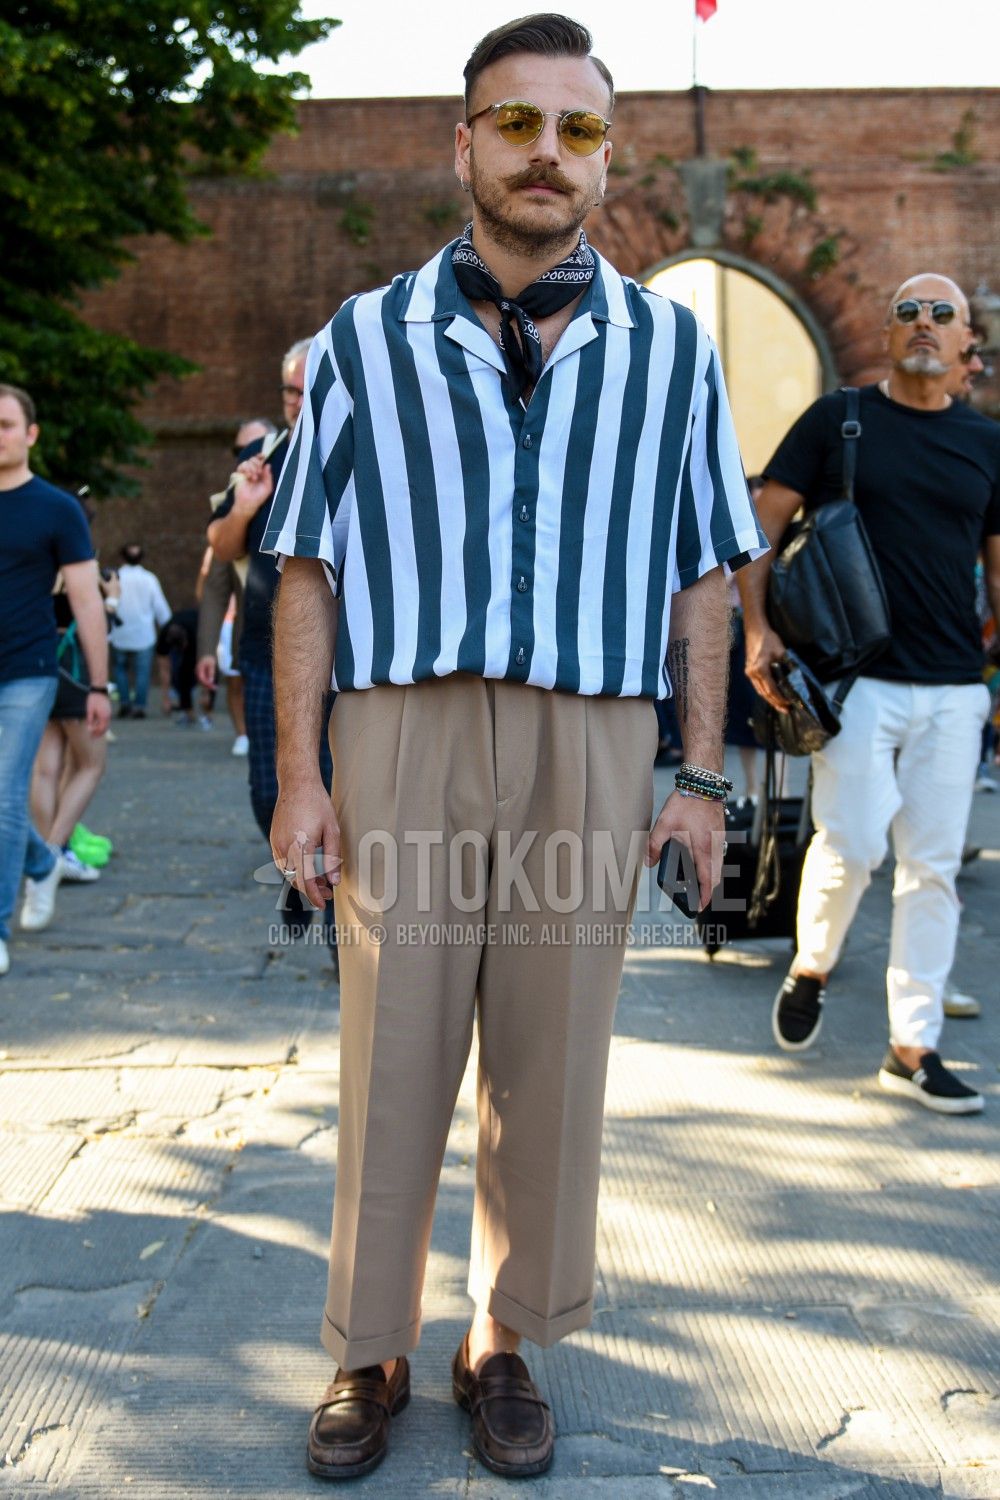 半袖シャツ メンズ コーデ特集 こなれた夏の装い おすすめアイテムを紹介 メンズファッションメディア Otokomaeotokomae 男前研究所